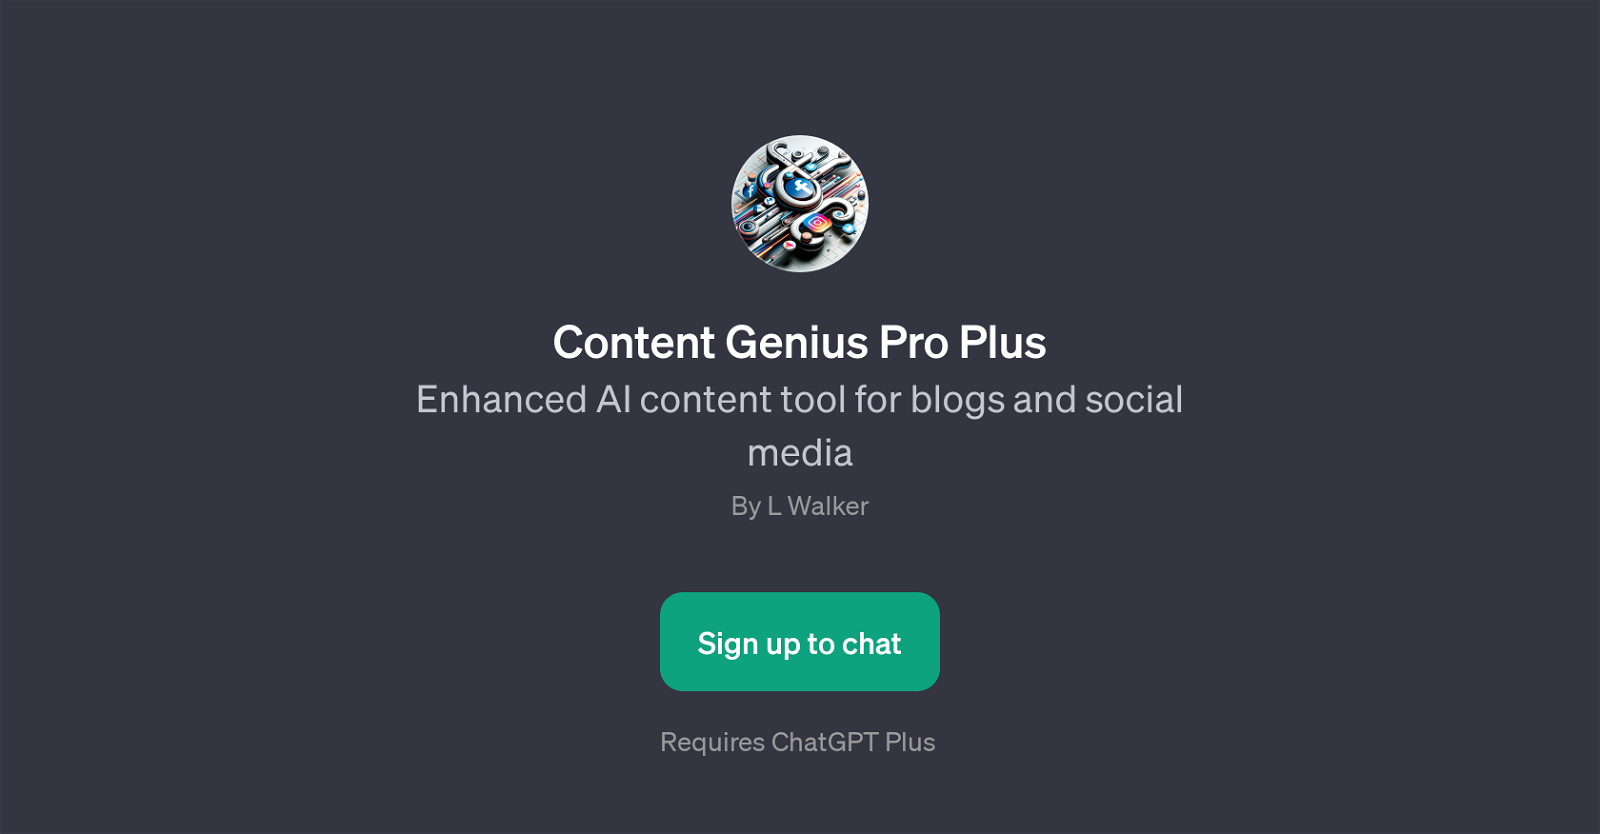 Content Genius Pro Plus website